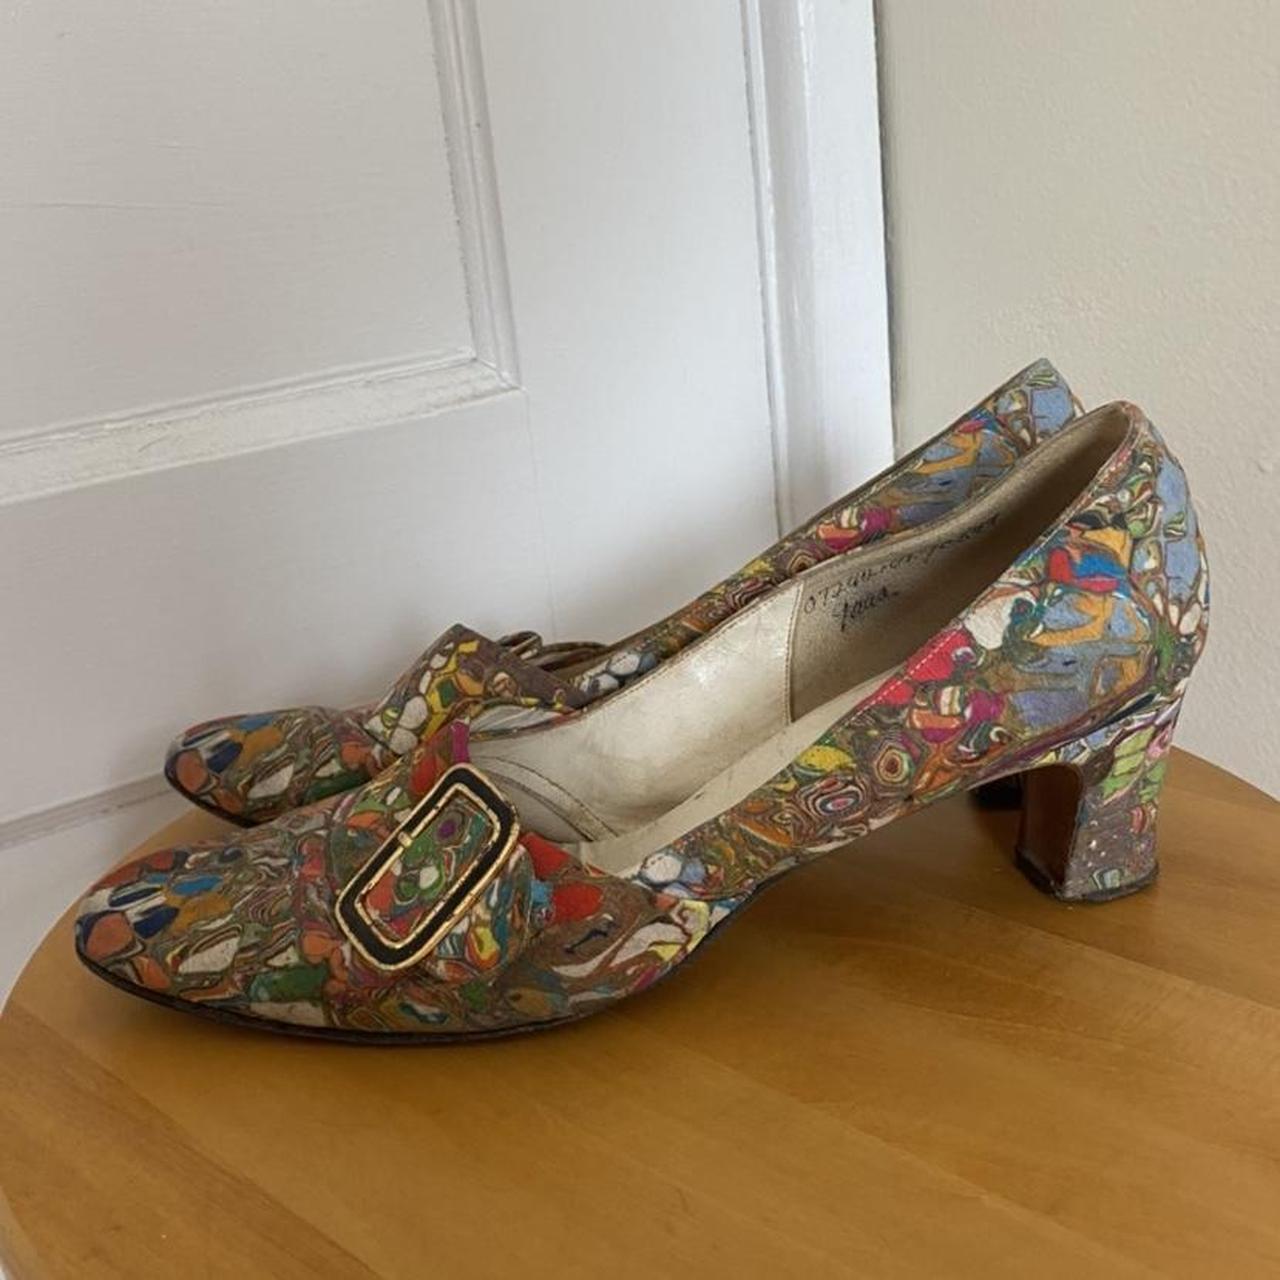 . 1960s vintage psychedelic heels In poor condition,... - Depop